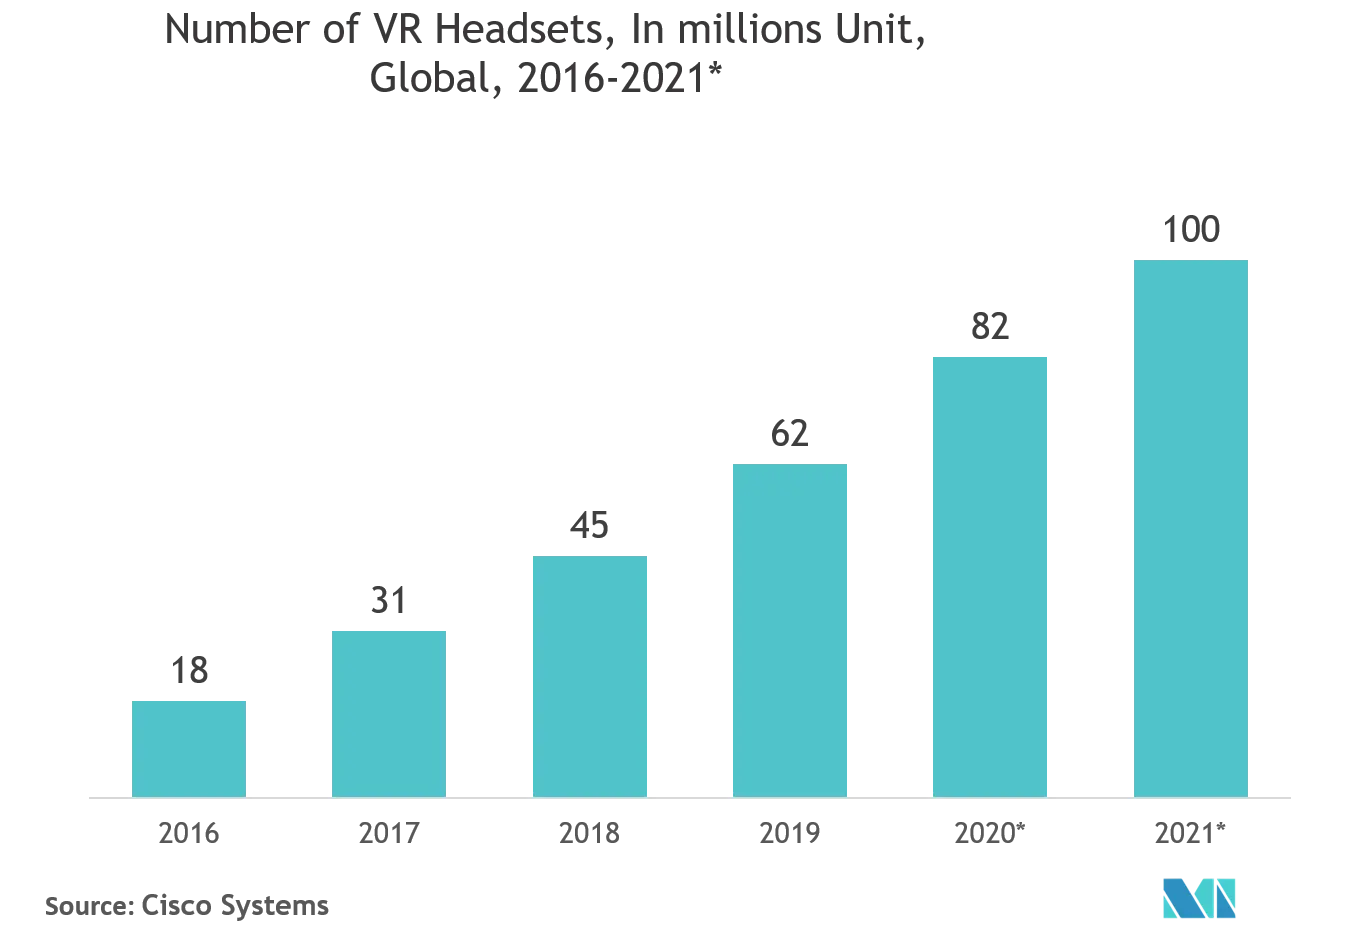 Markt für 3D-Displays der nächsten Generation - Anzahl der VR-Headsets, in Millionen Stück, weltweit, 2016 - 2021